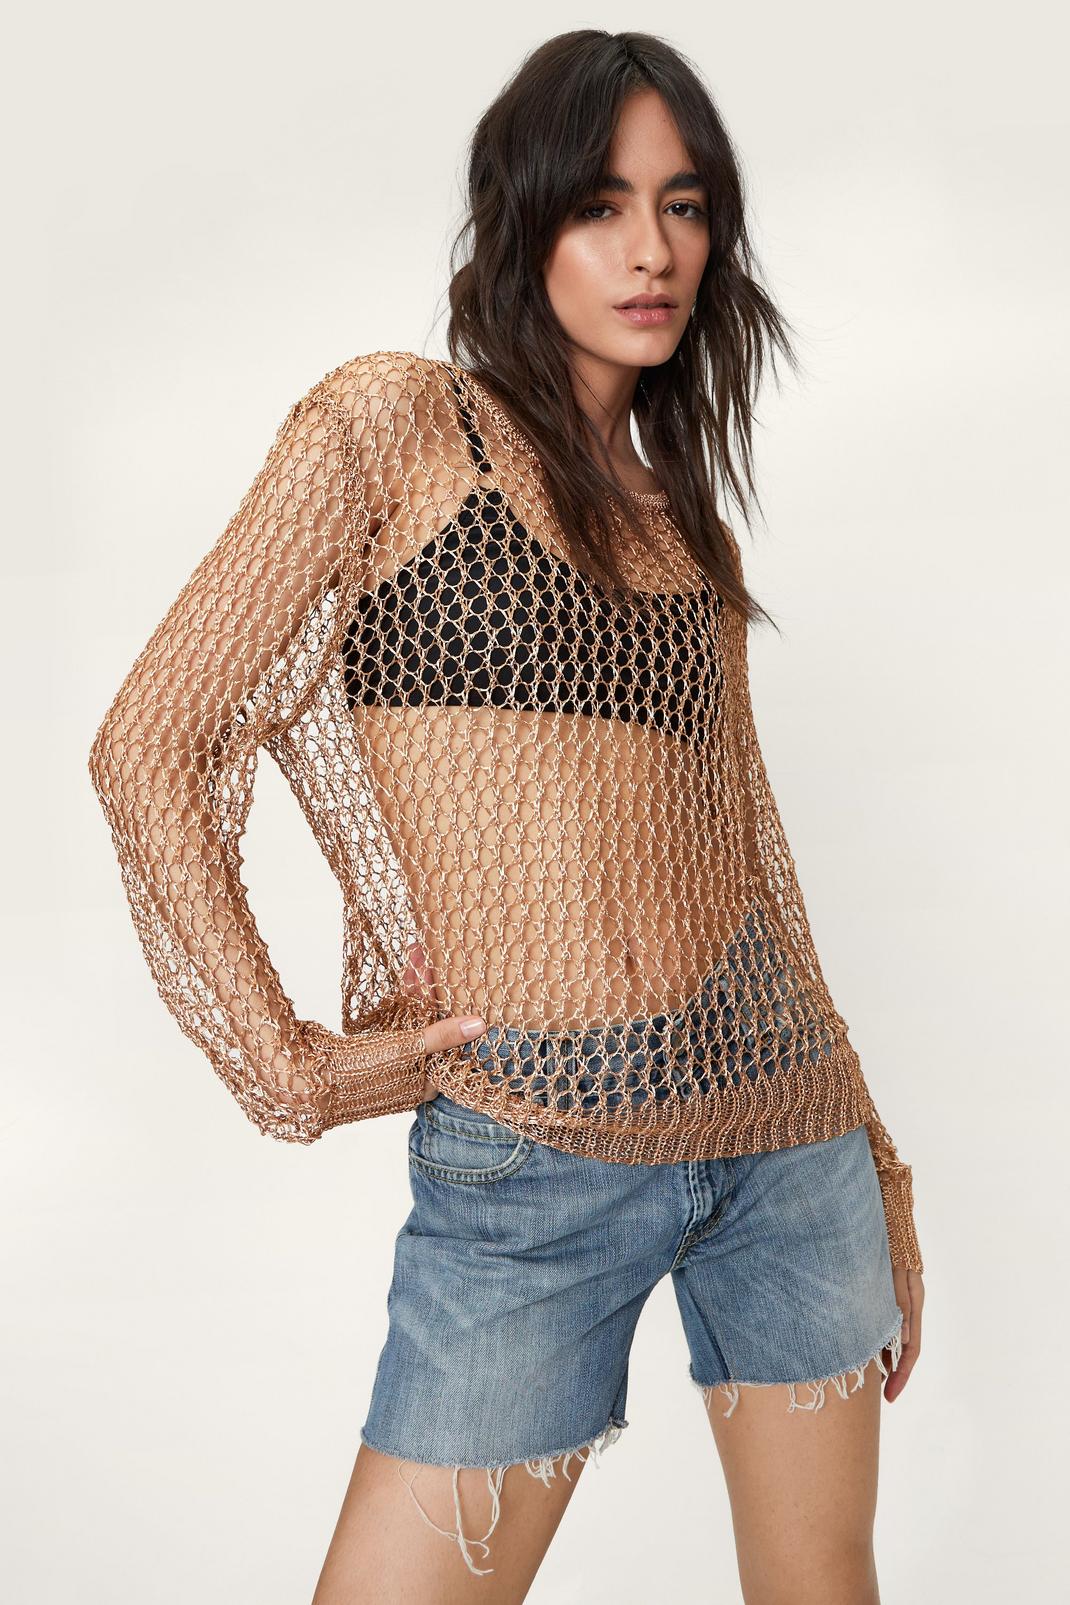 Metallic Yarn Loose Fitted Sweater